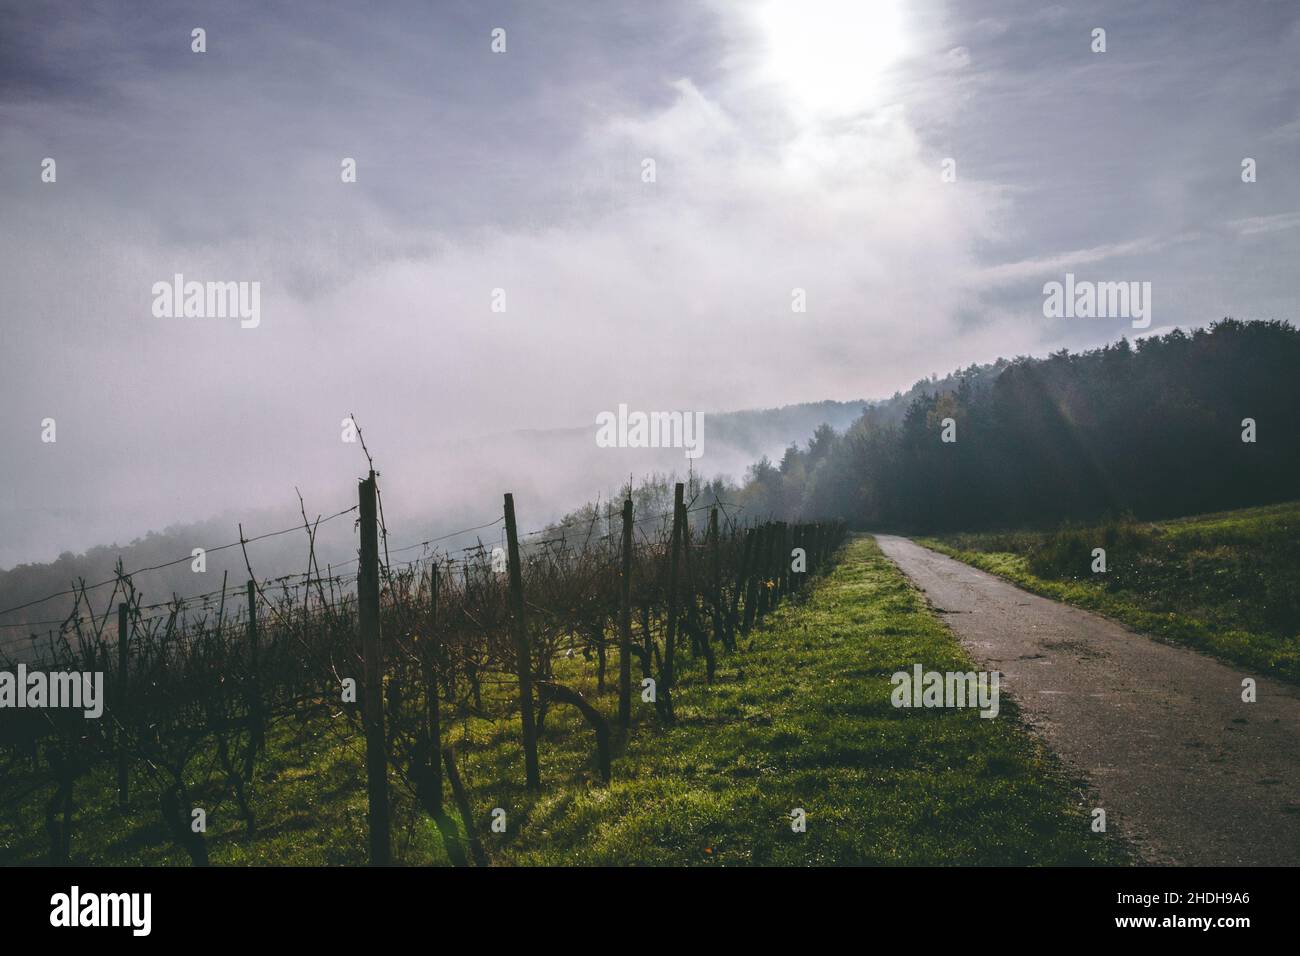 Vineyard in Germany Stock Photo